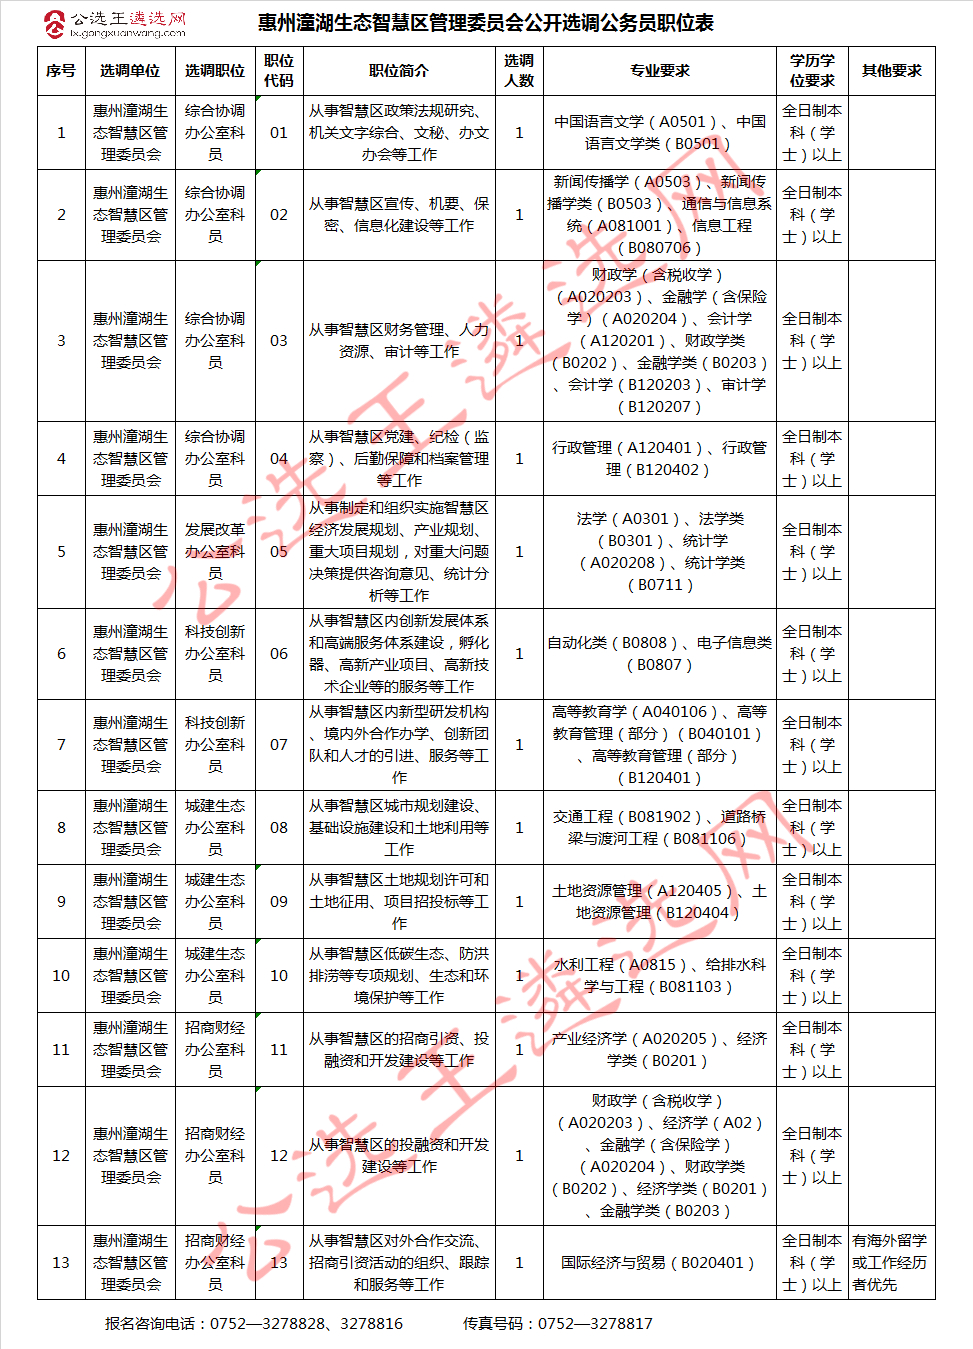 惠州潼湖生态智慧区管理委员会公开选调公务员职位表.jpg